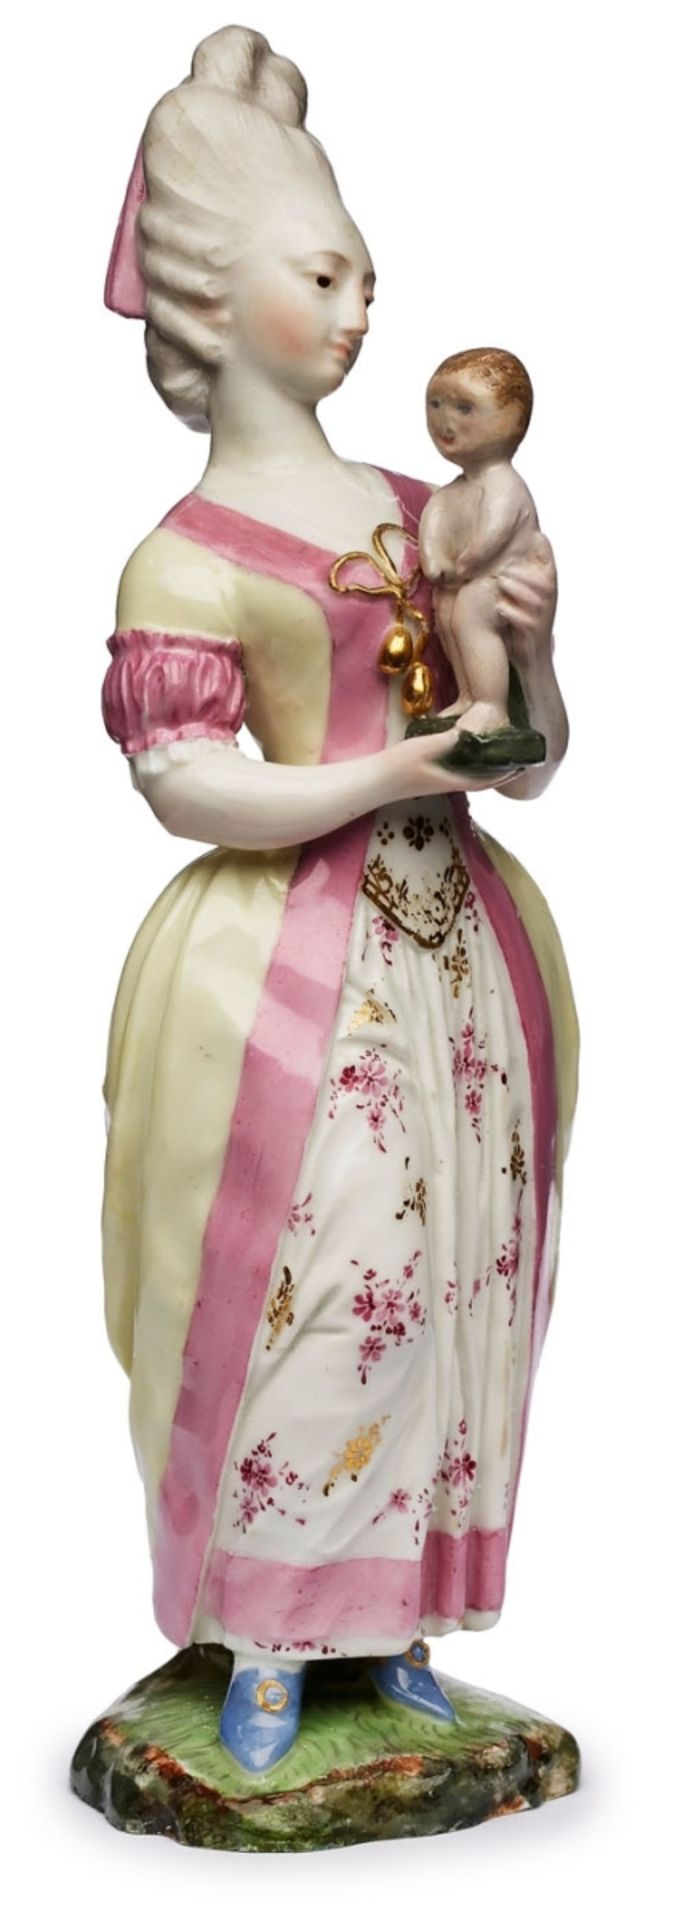 Dame mit Puppe, Höchst um 1765.